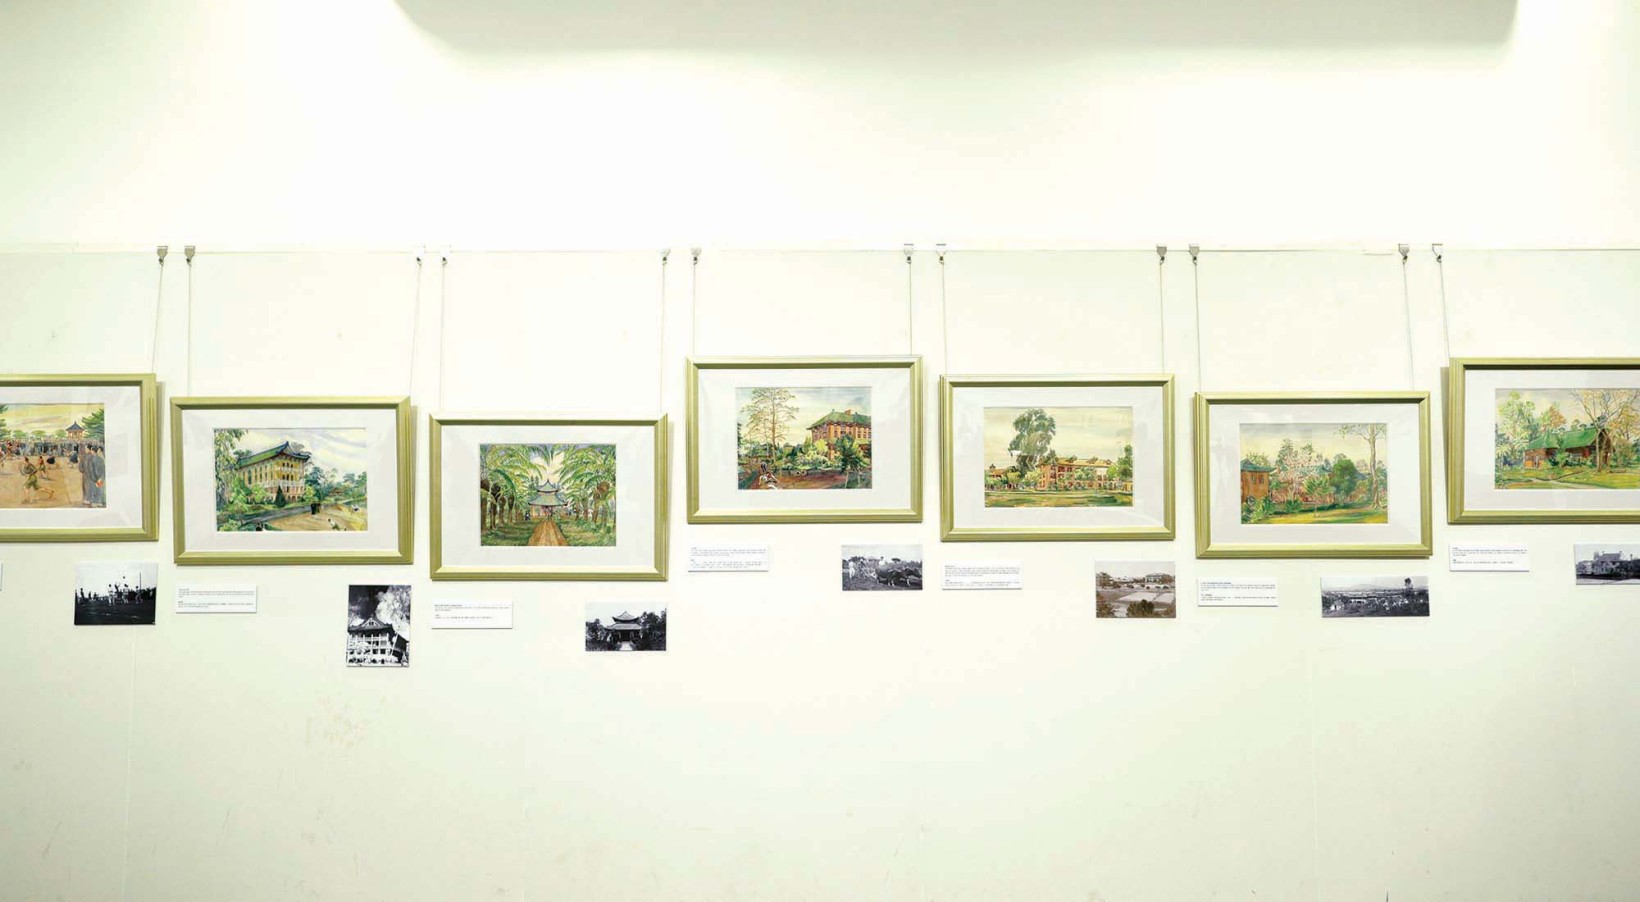 「司徒衞艺术展览」展出逾五十幅司徒衞先生的珍藏画作。